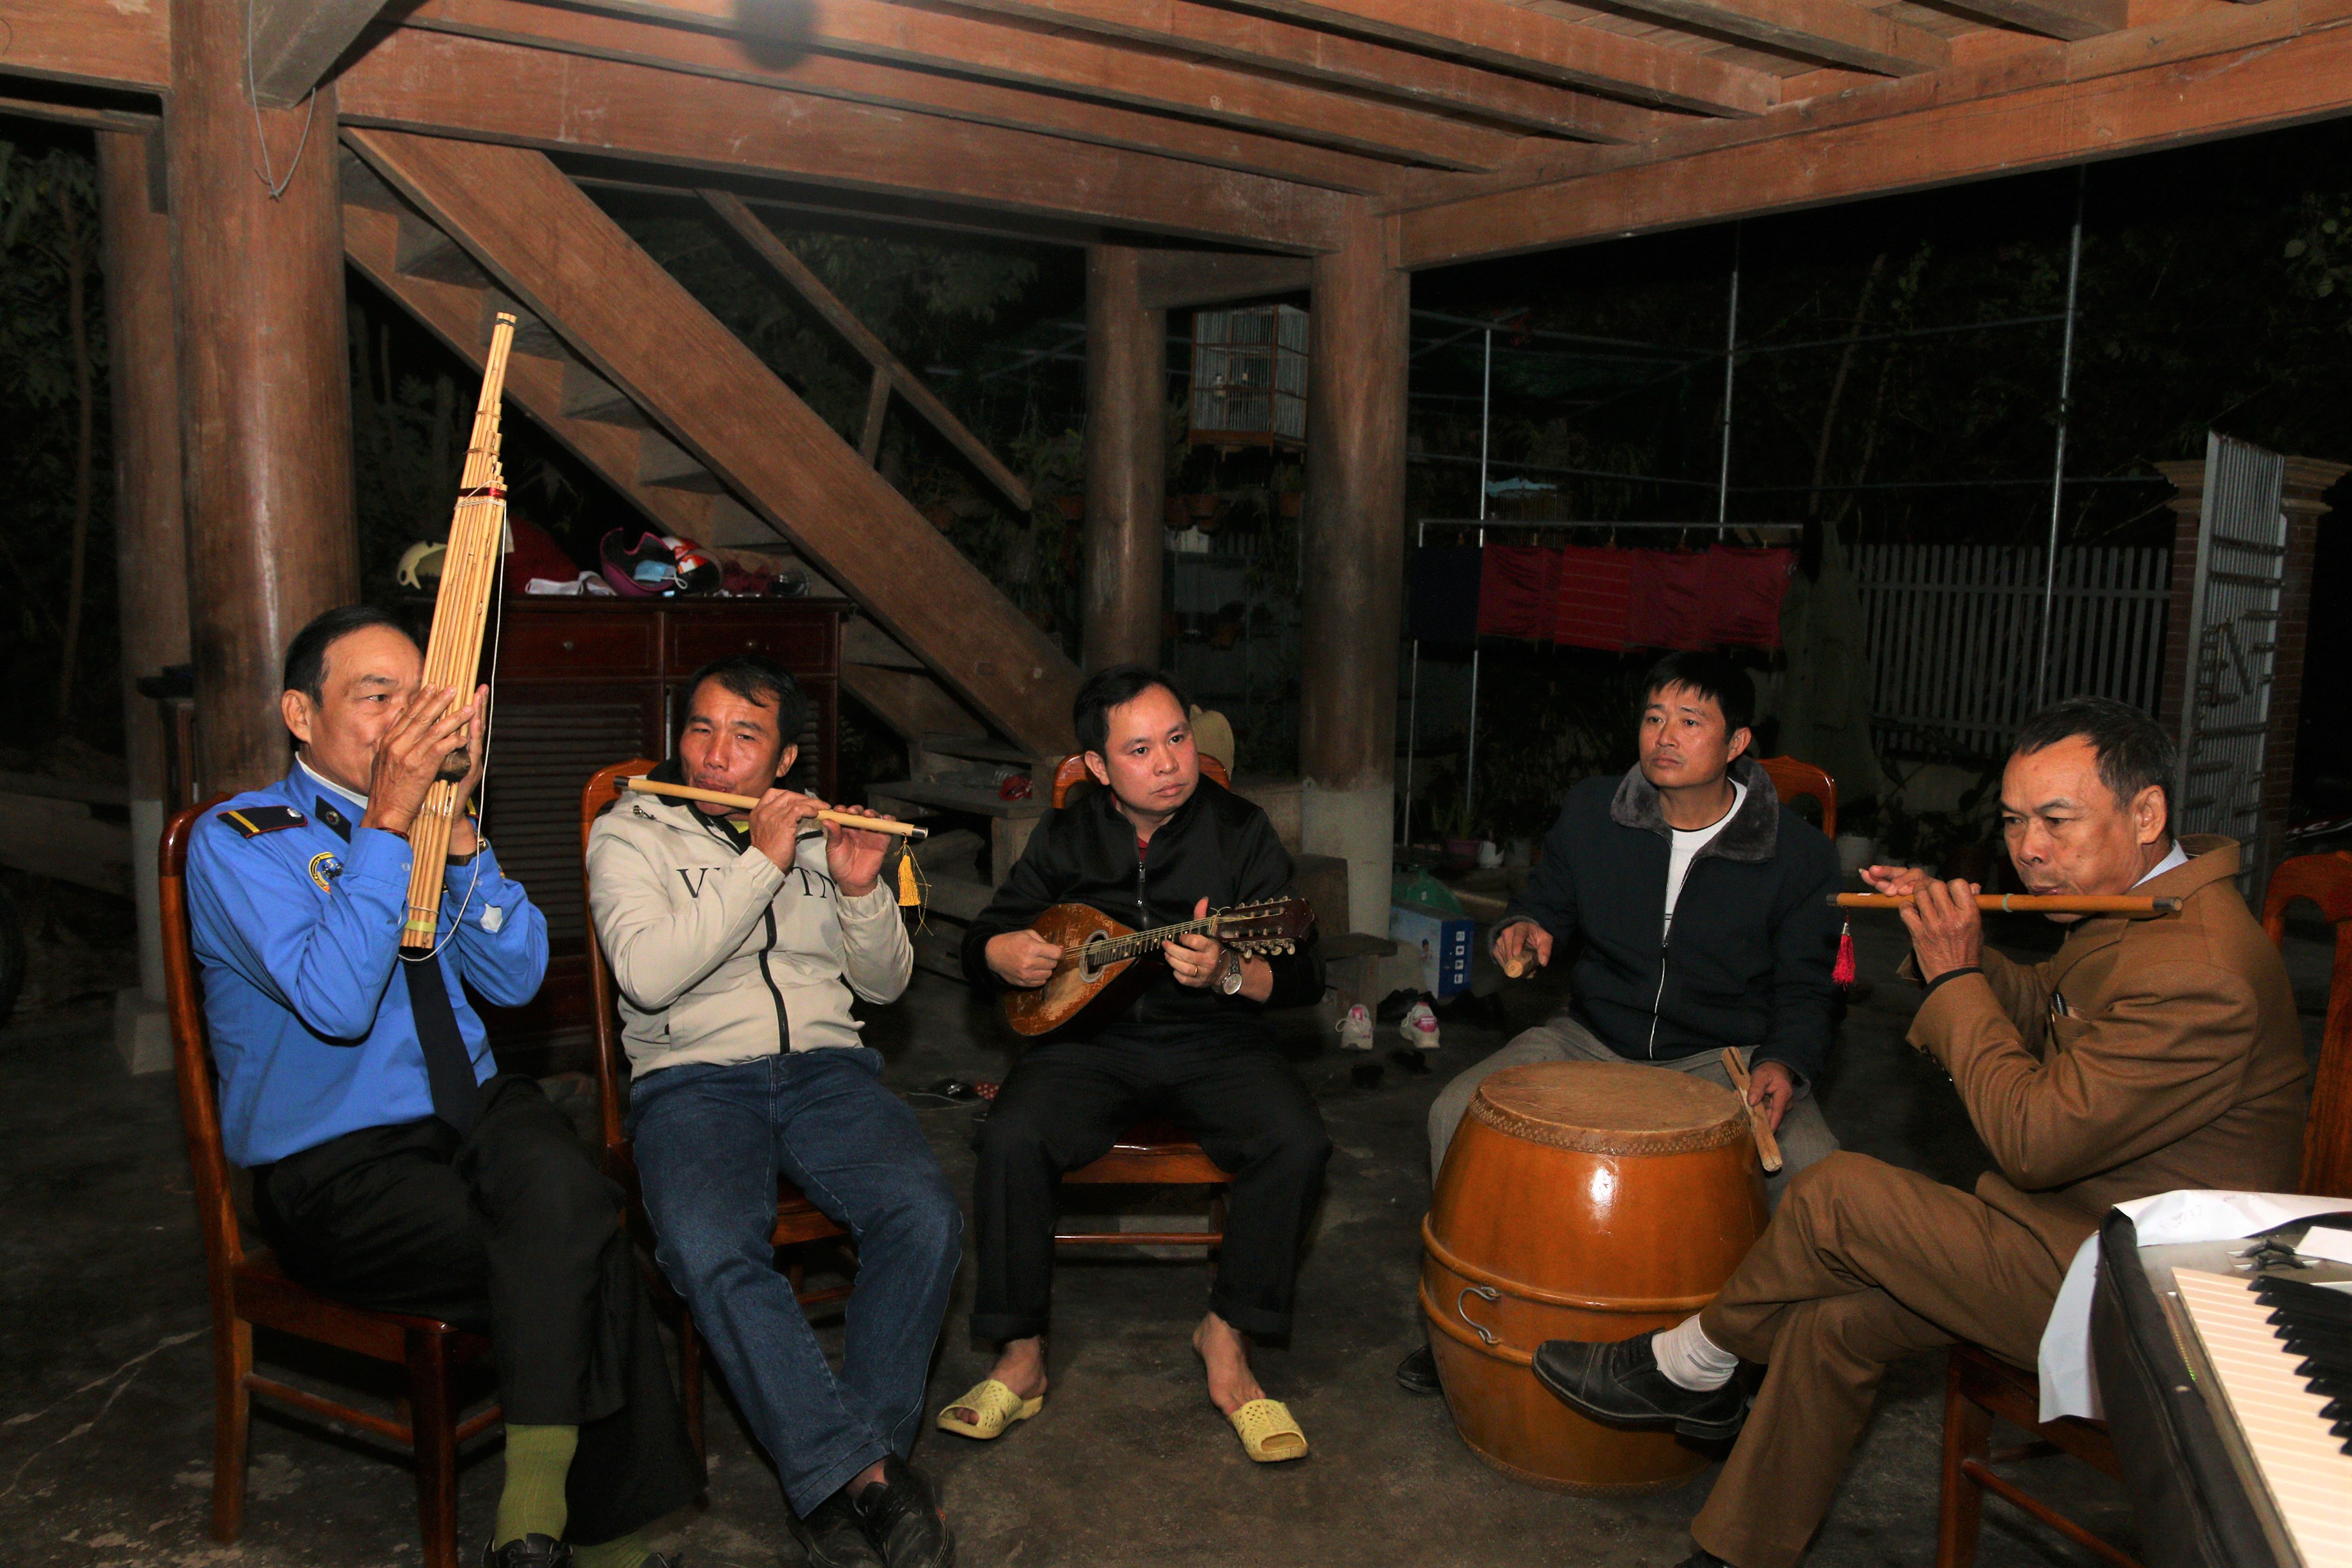 Các thành viên của nhóm yêu nhạc cụ dân tộc do anh Lương Văn Huỳnh (giữa) lập nên hiện có 10 thành viên tham gia, trong đó có nông dân, giáo viên, bảo vệ…